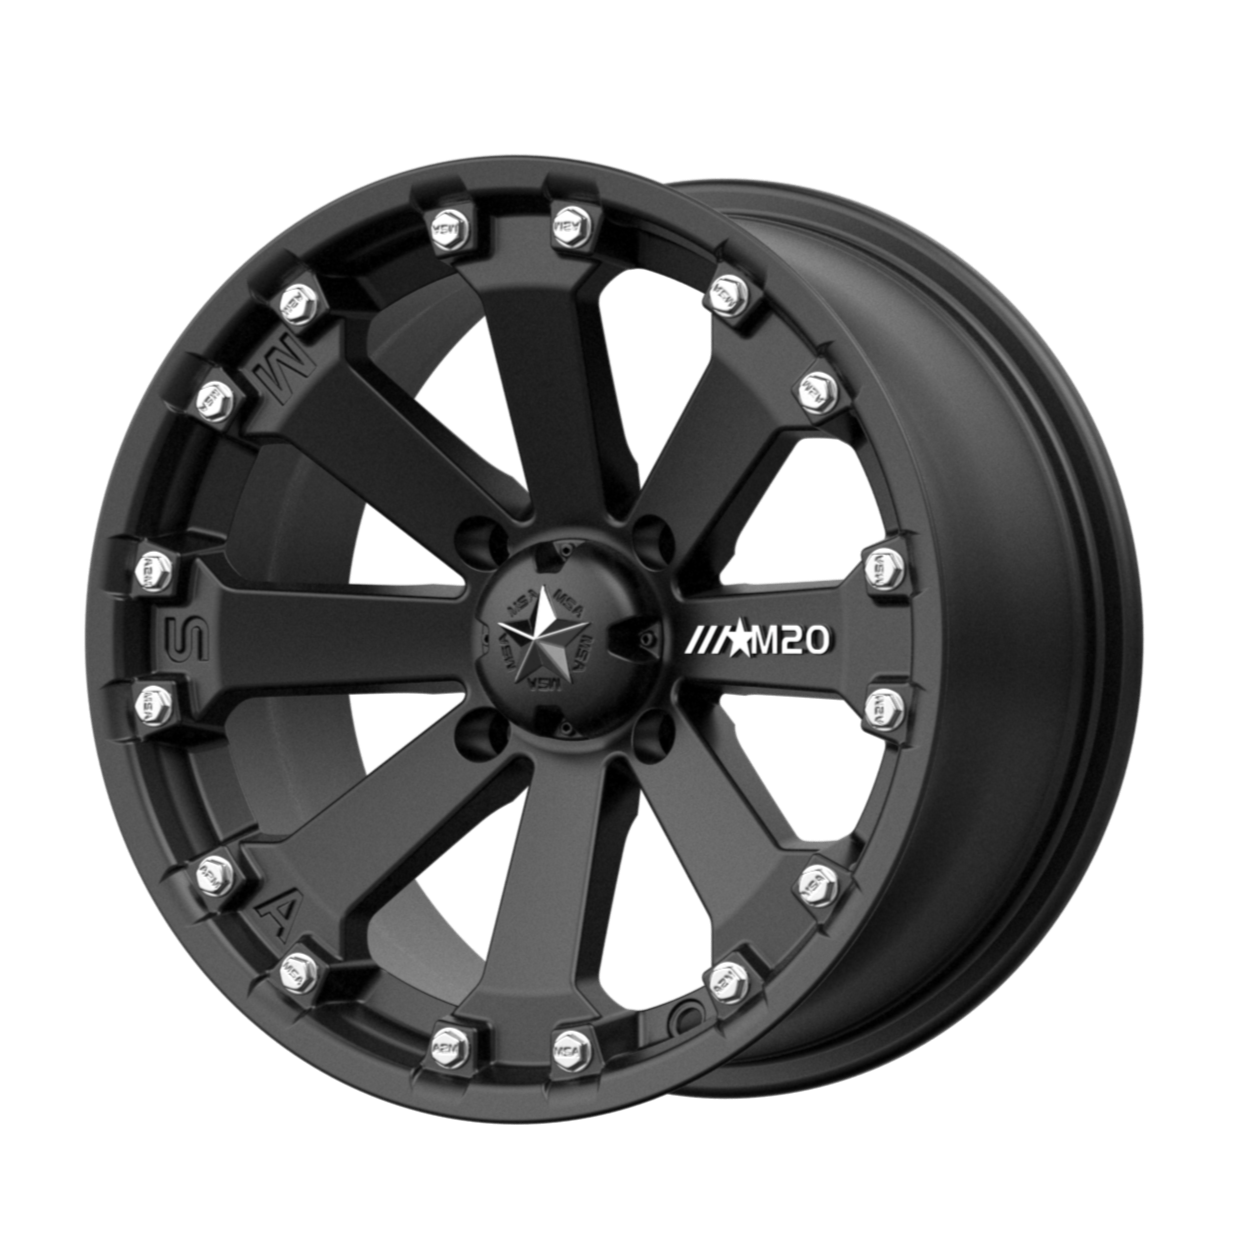 MSA Offroad Wheels M20 KORE 14x7 0 4x110/4x110 Satin Black